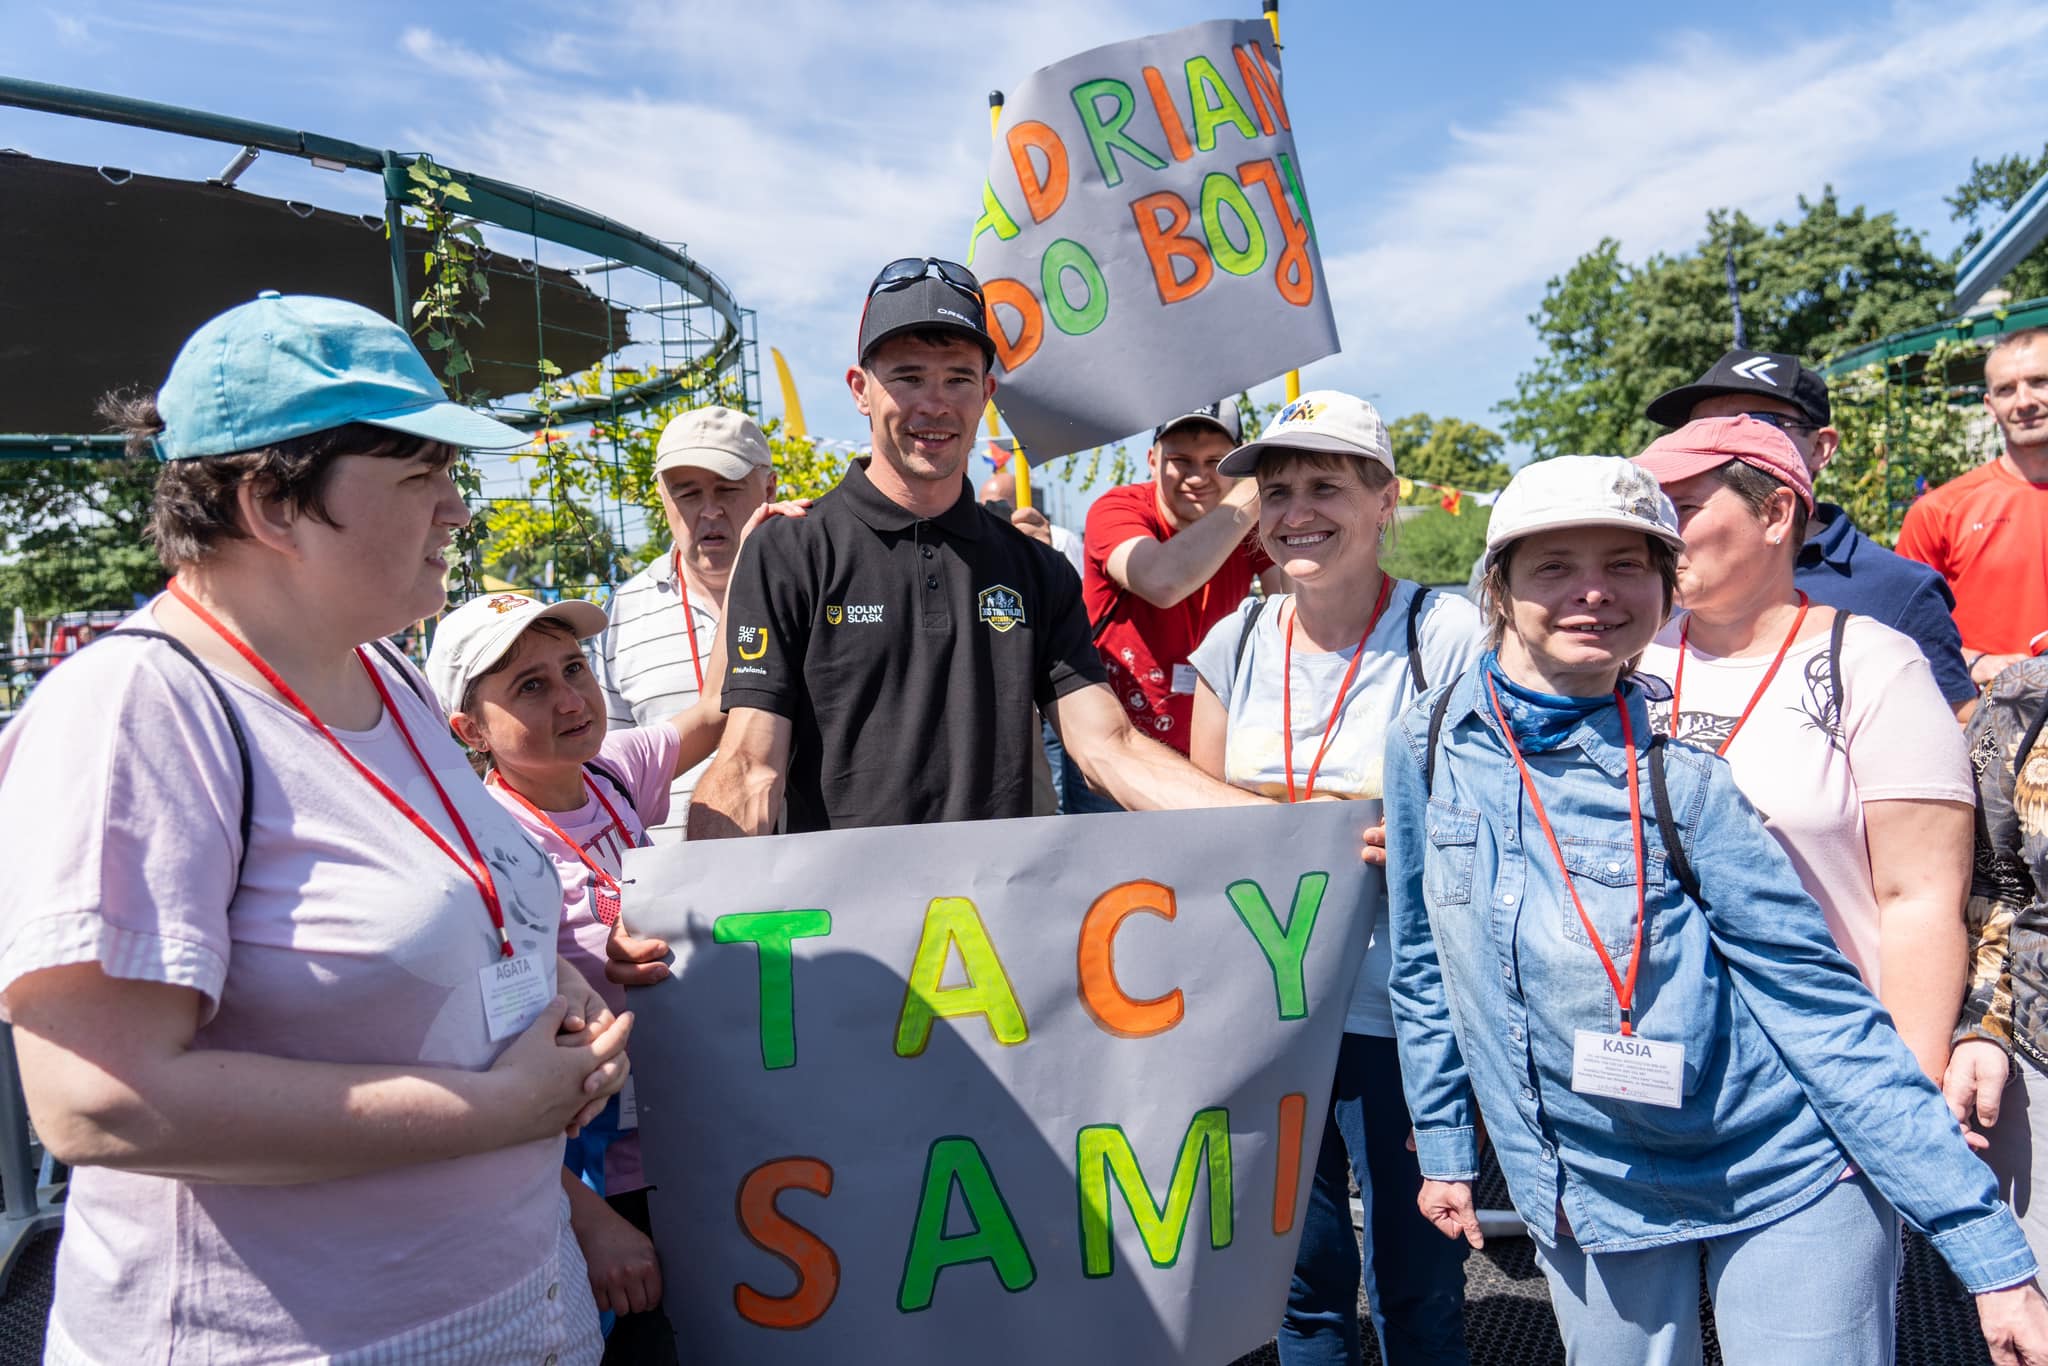 Zdjęcie przedstawia podopiecznych Świetlicy Terapeutycznej Tacy Sami z Adrianem Kosterą podczas startu zawodnika w wyzwaniu 365 Triathlon. Kilka uśmiechniętych osób trzyma dużą kartkę z napisem 'Tacy Sami'.